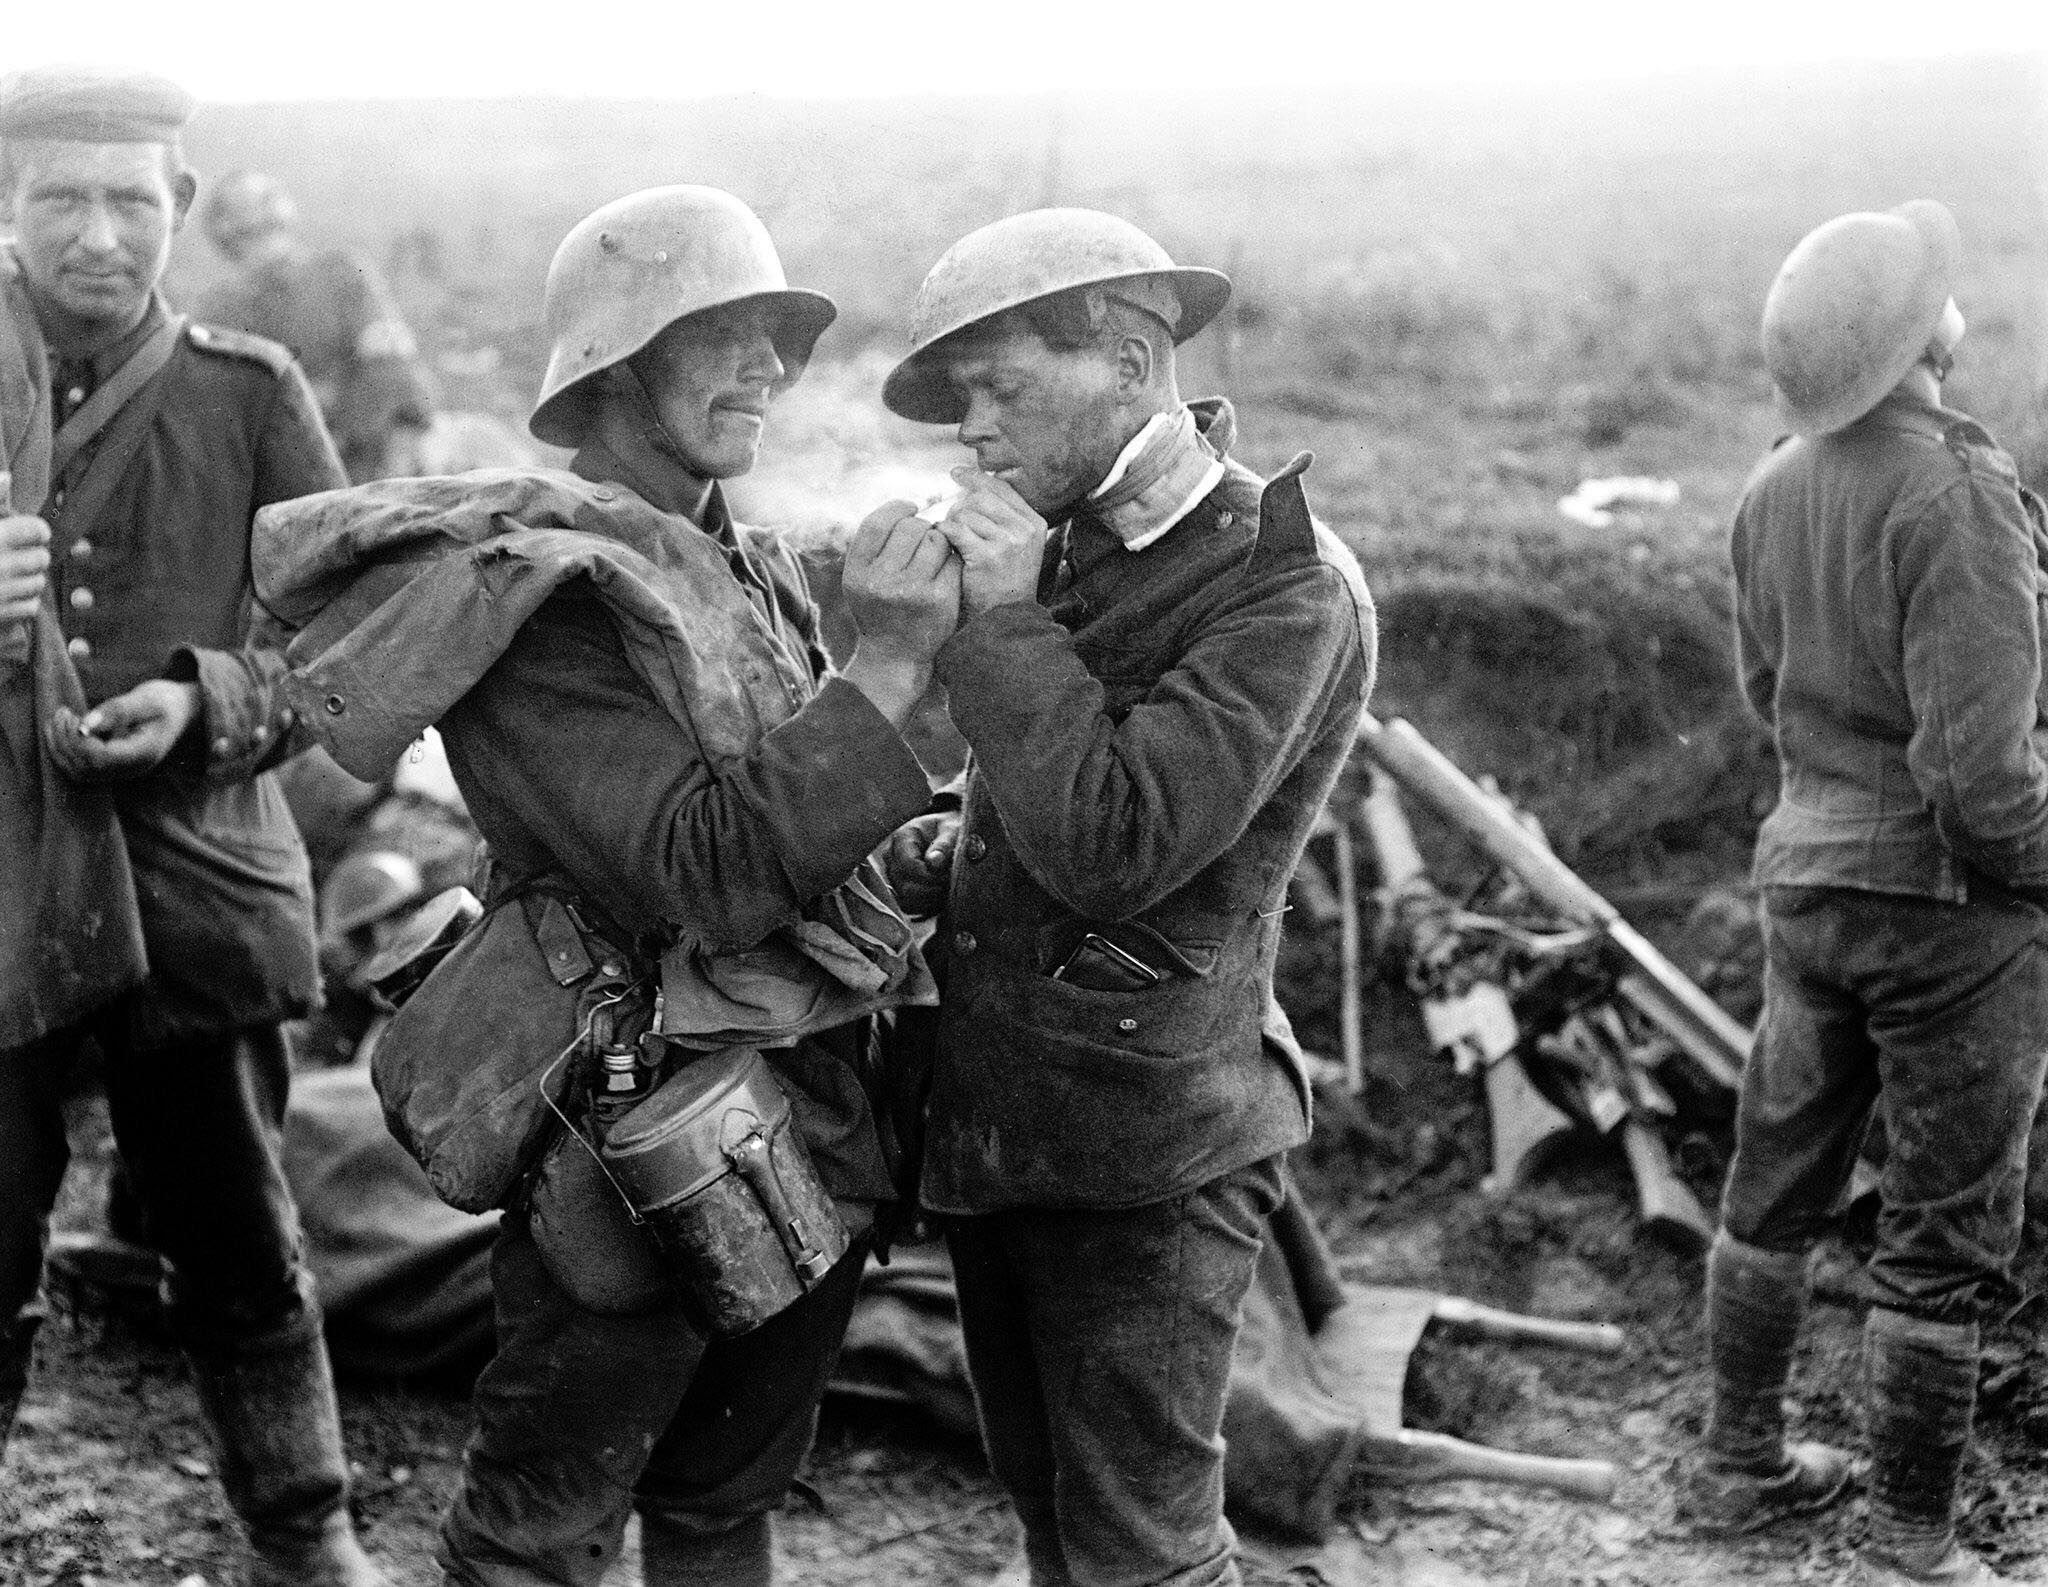 Рождество на войне: впечатляющие факты о перемирии во время Первой мировой